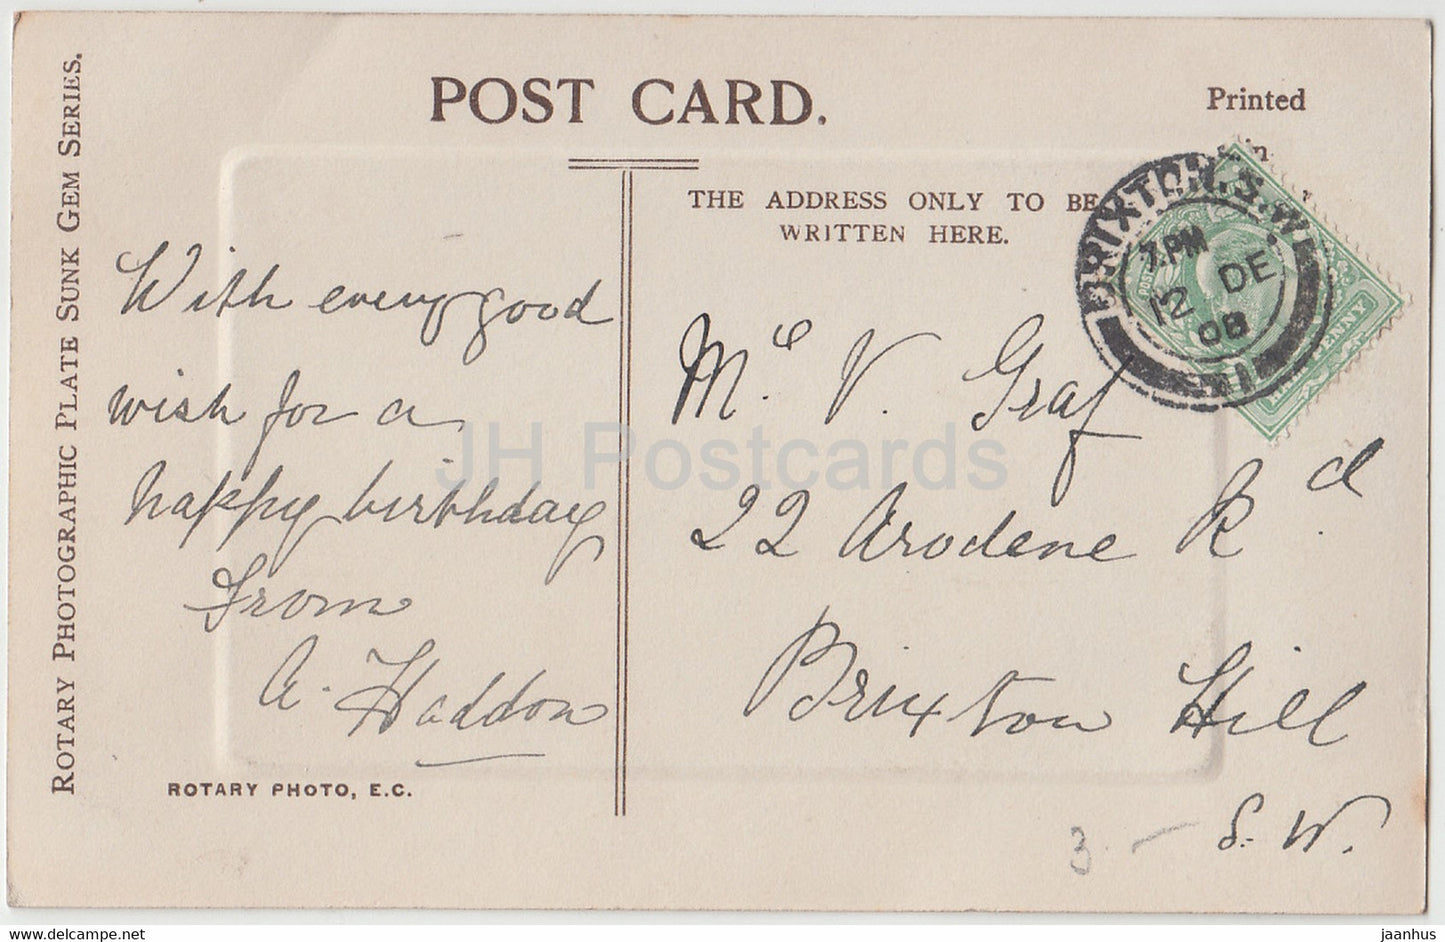 Geburtstagsgrußkarte – Many Happy Returns – Kätzchen – P 1737 – alte Postkarte – 1908 – Vereinigtes Königreich – gebraucht